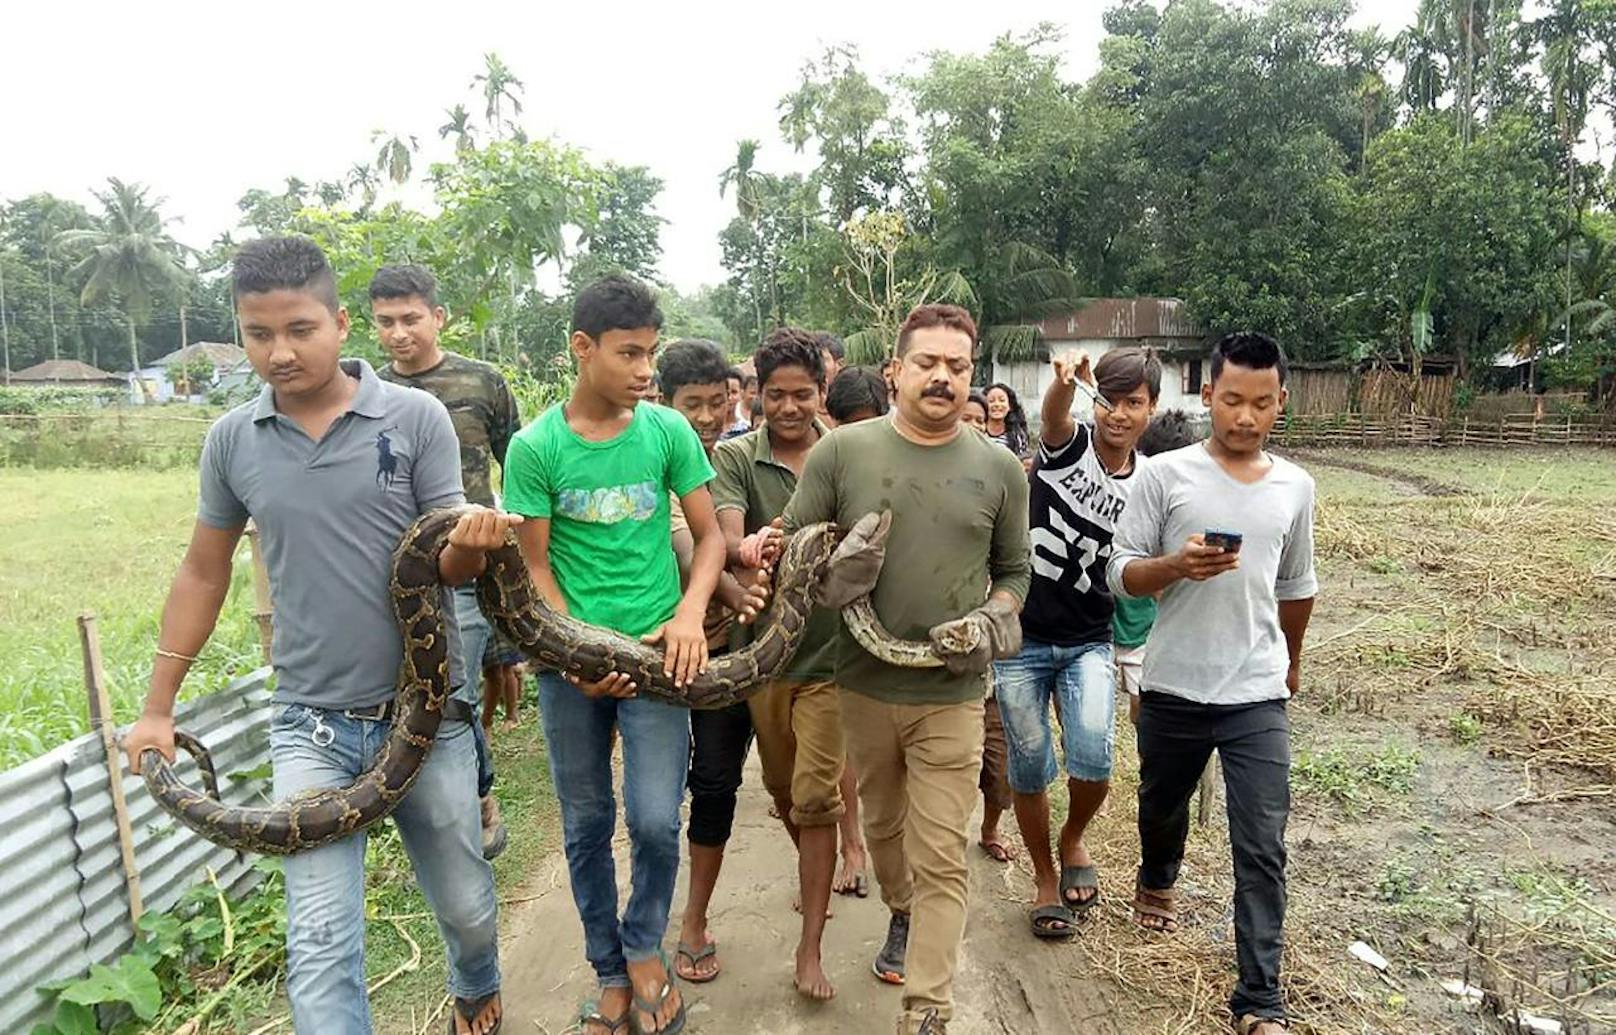 Während Förster Sanjay Dutta (Mitte) aus Westbengalen für Fotos vor einer jubelnden Menge mit einer fünfeinhalb Meter langen Python posierte, wurde er von dieser beinahe erdrosselt (17. Juni 2018).